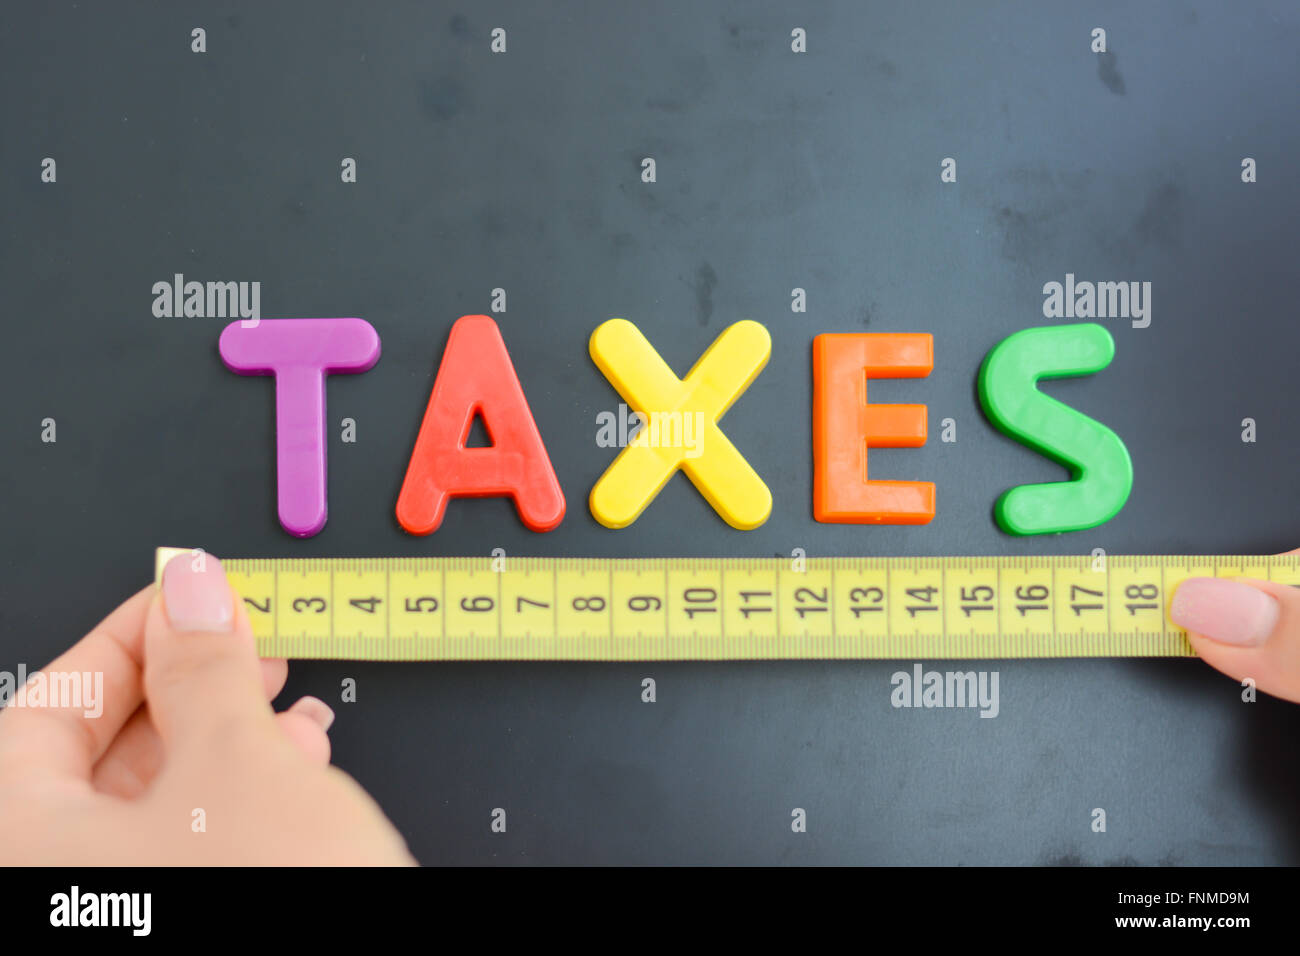 Misurare le imposte in un concetto business, società o di economia Foto Stock